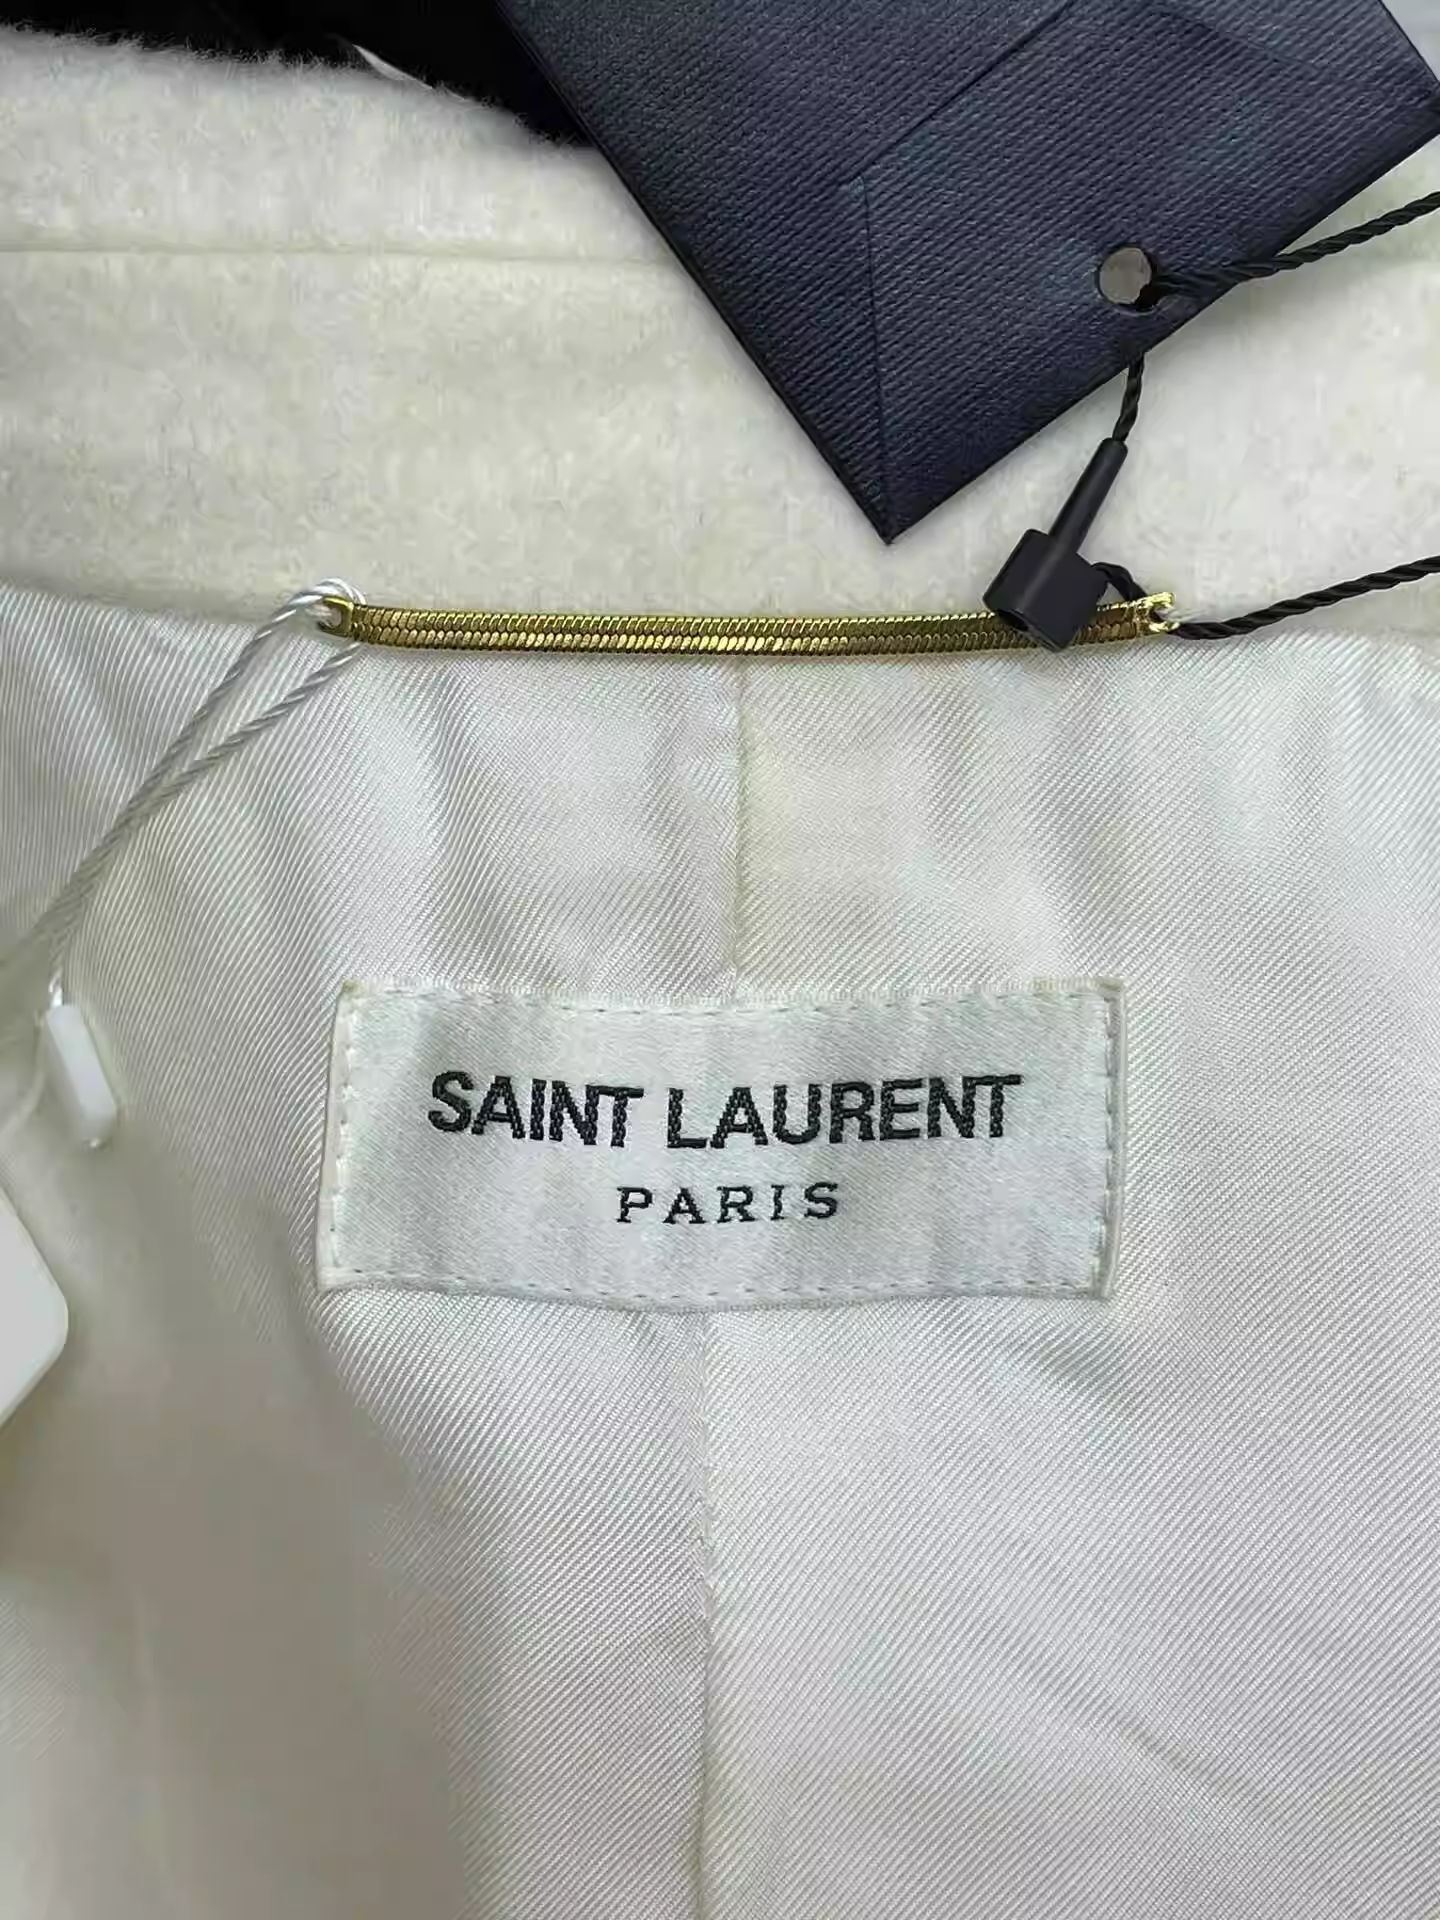 Saint Laurent Paris saint laurent White Double Breasted Wool Suit Size US XS / EU 42 / 0 - 5 Thumbnail